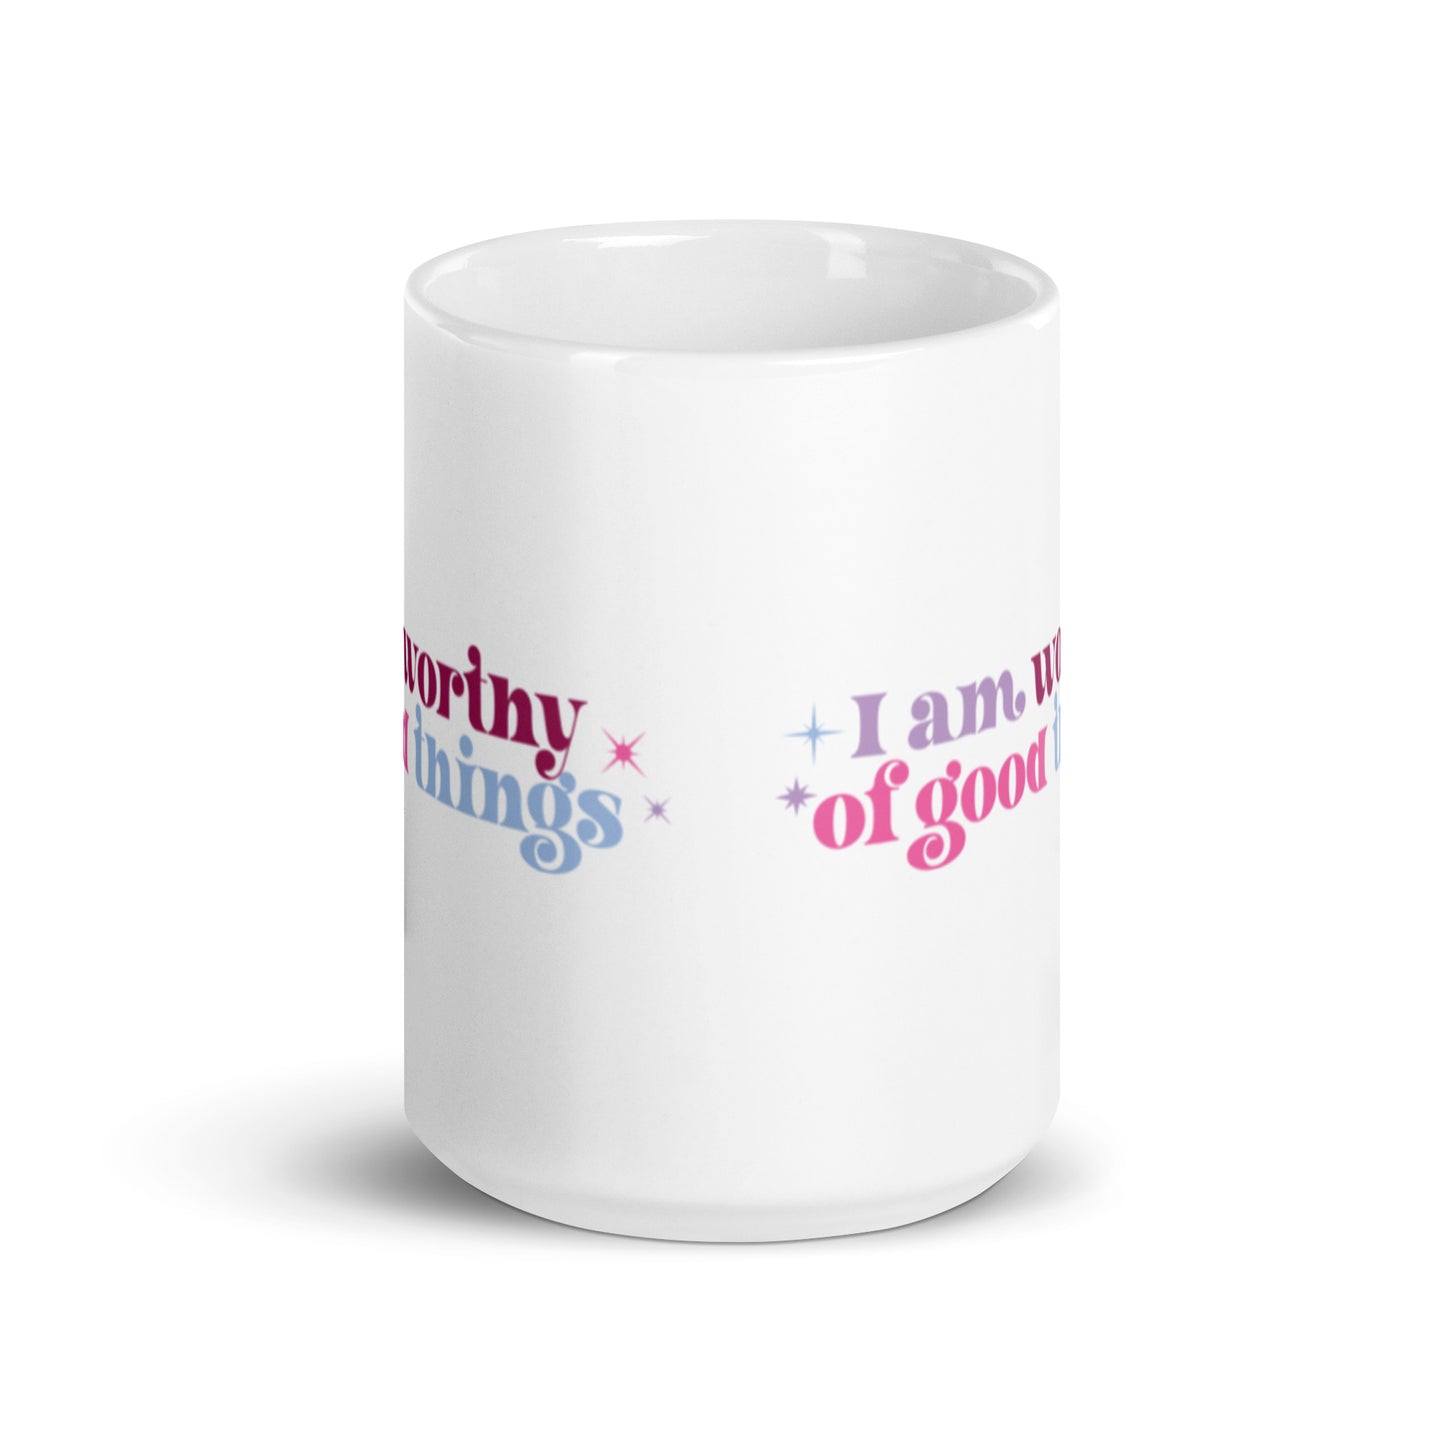 I Am Worthy of Good Things XL White Glossy Mug (15oz)